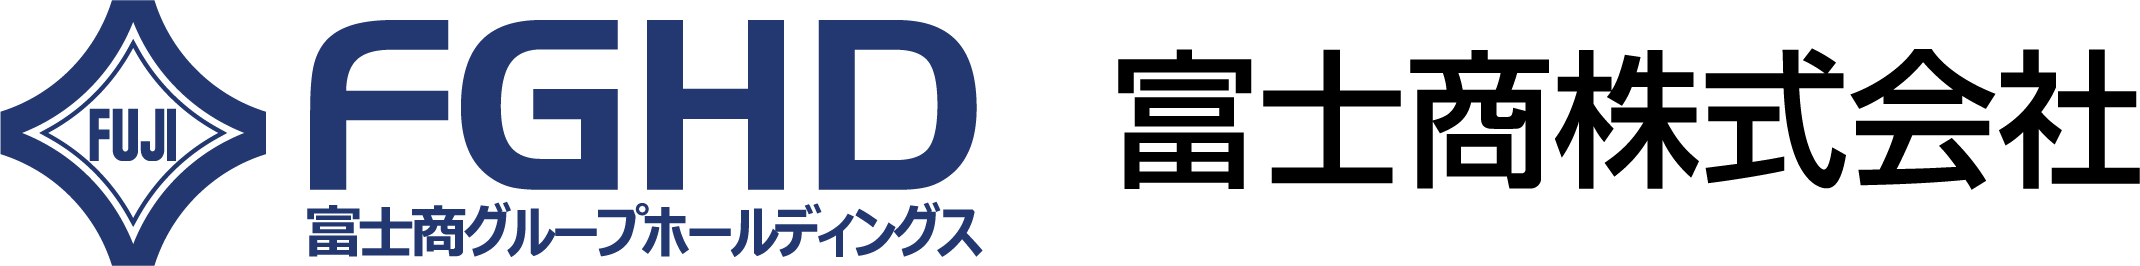 富士商株式会社コーポレートロゴ